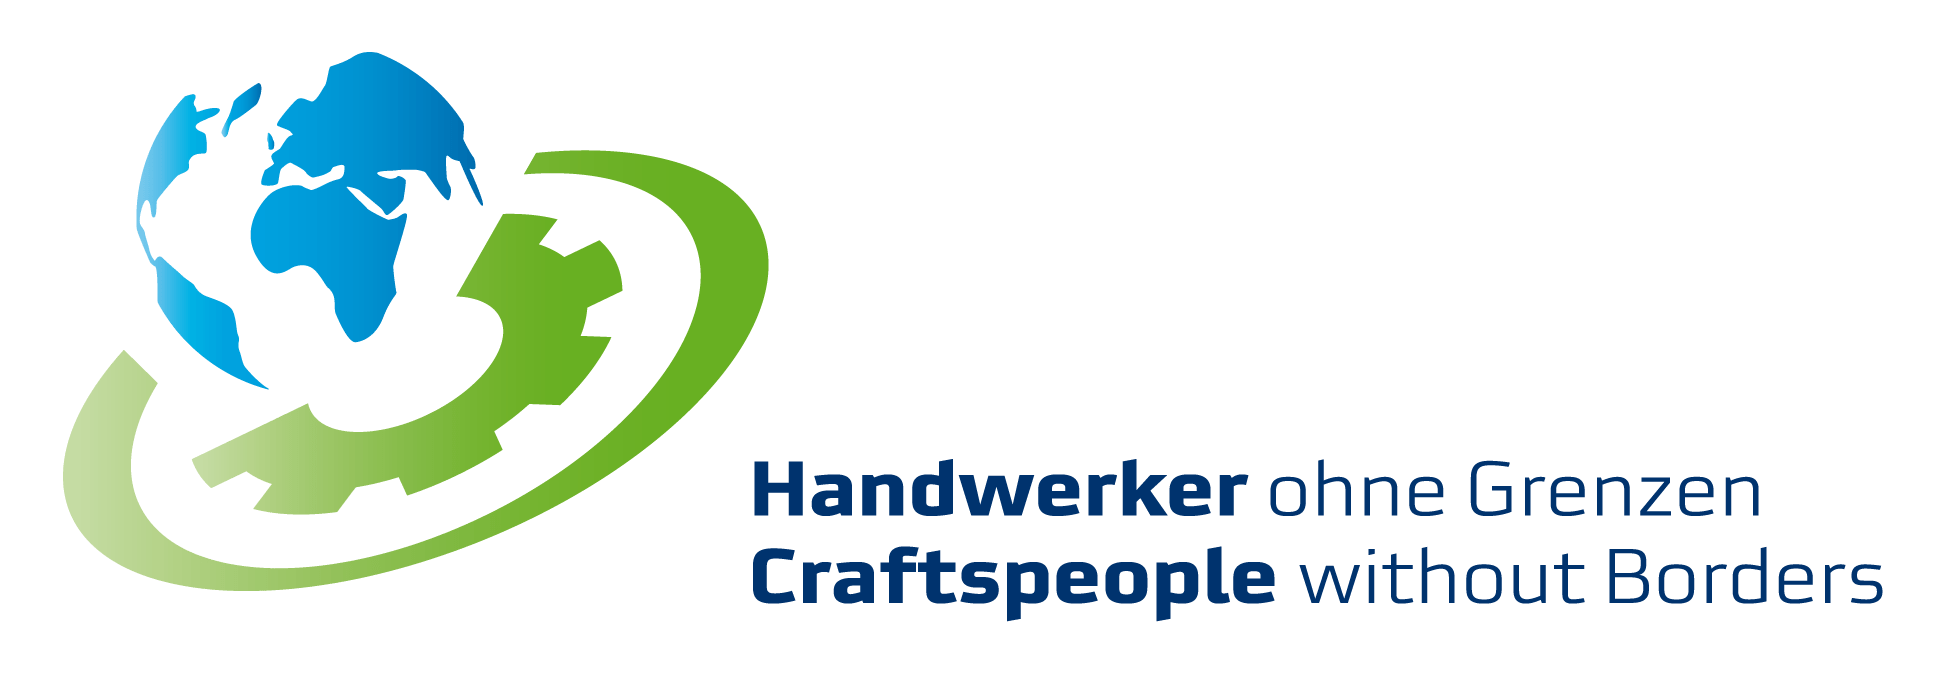 Logo Craftspeople without Borders / Handwerker ohne Grenzen